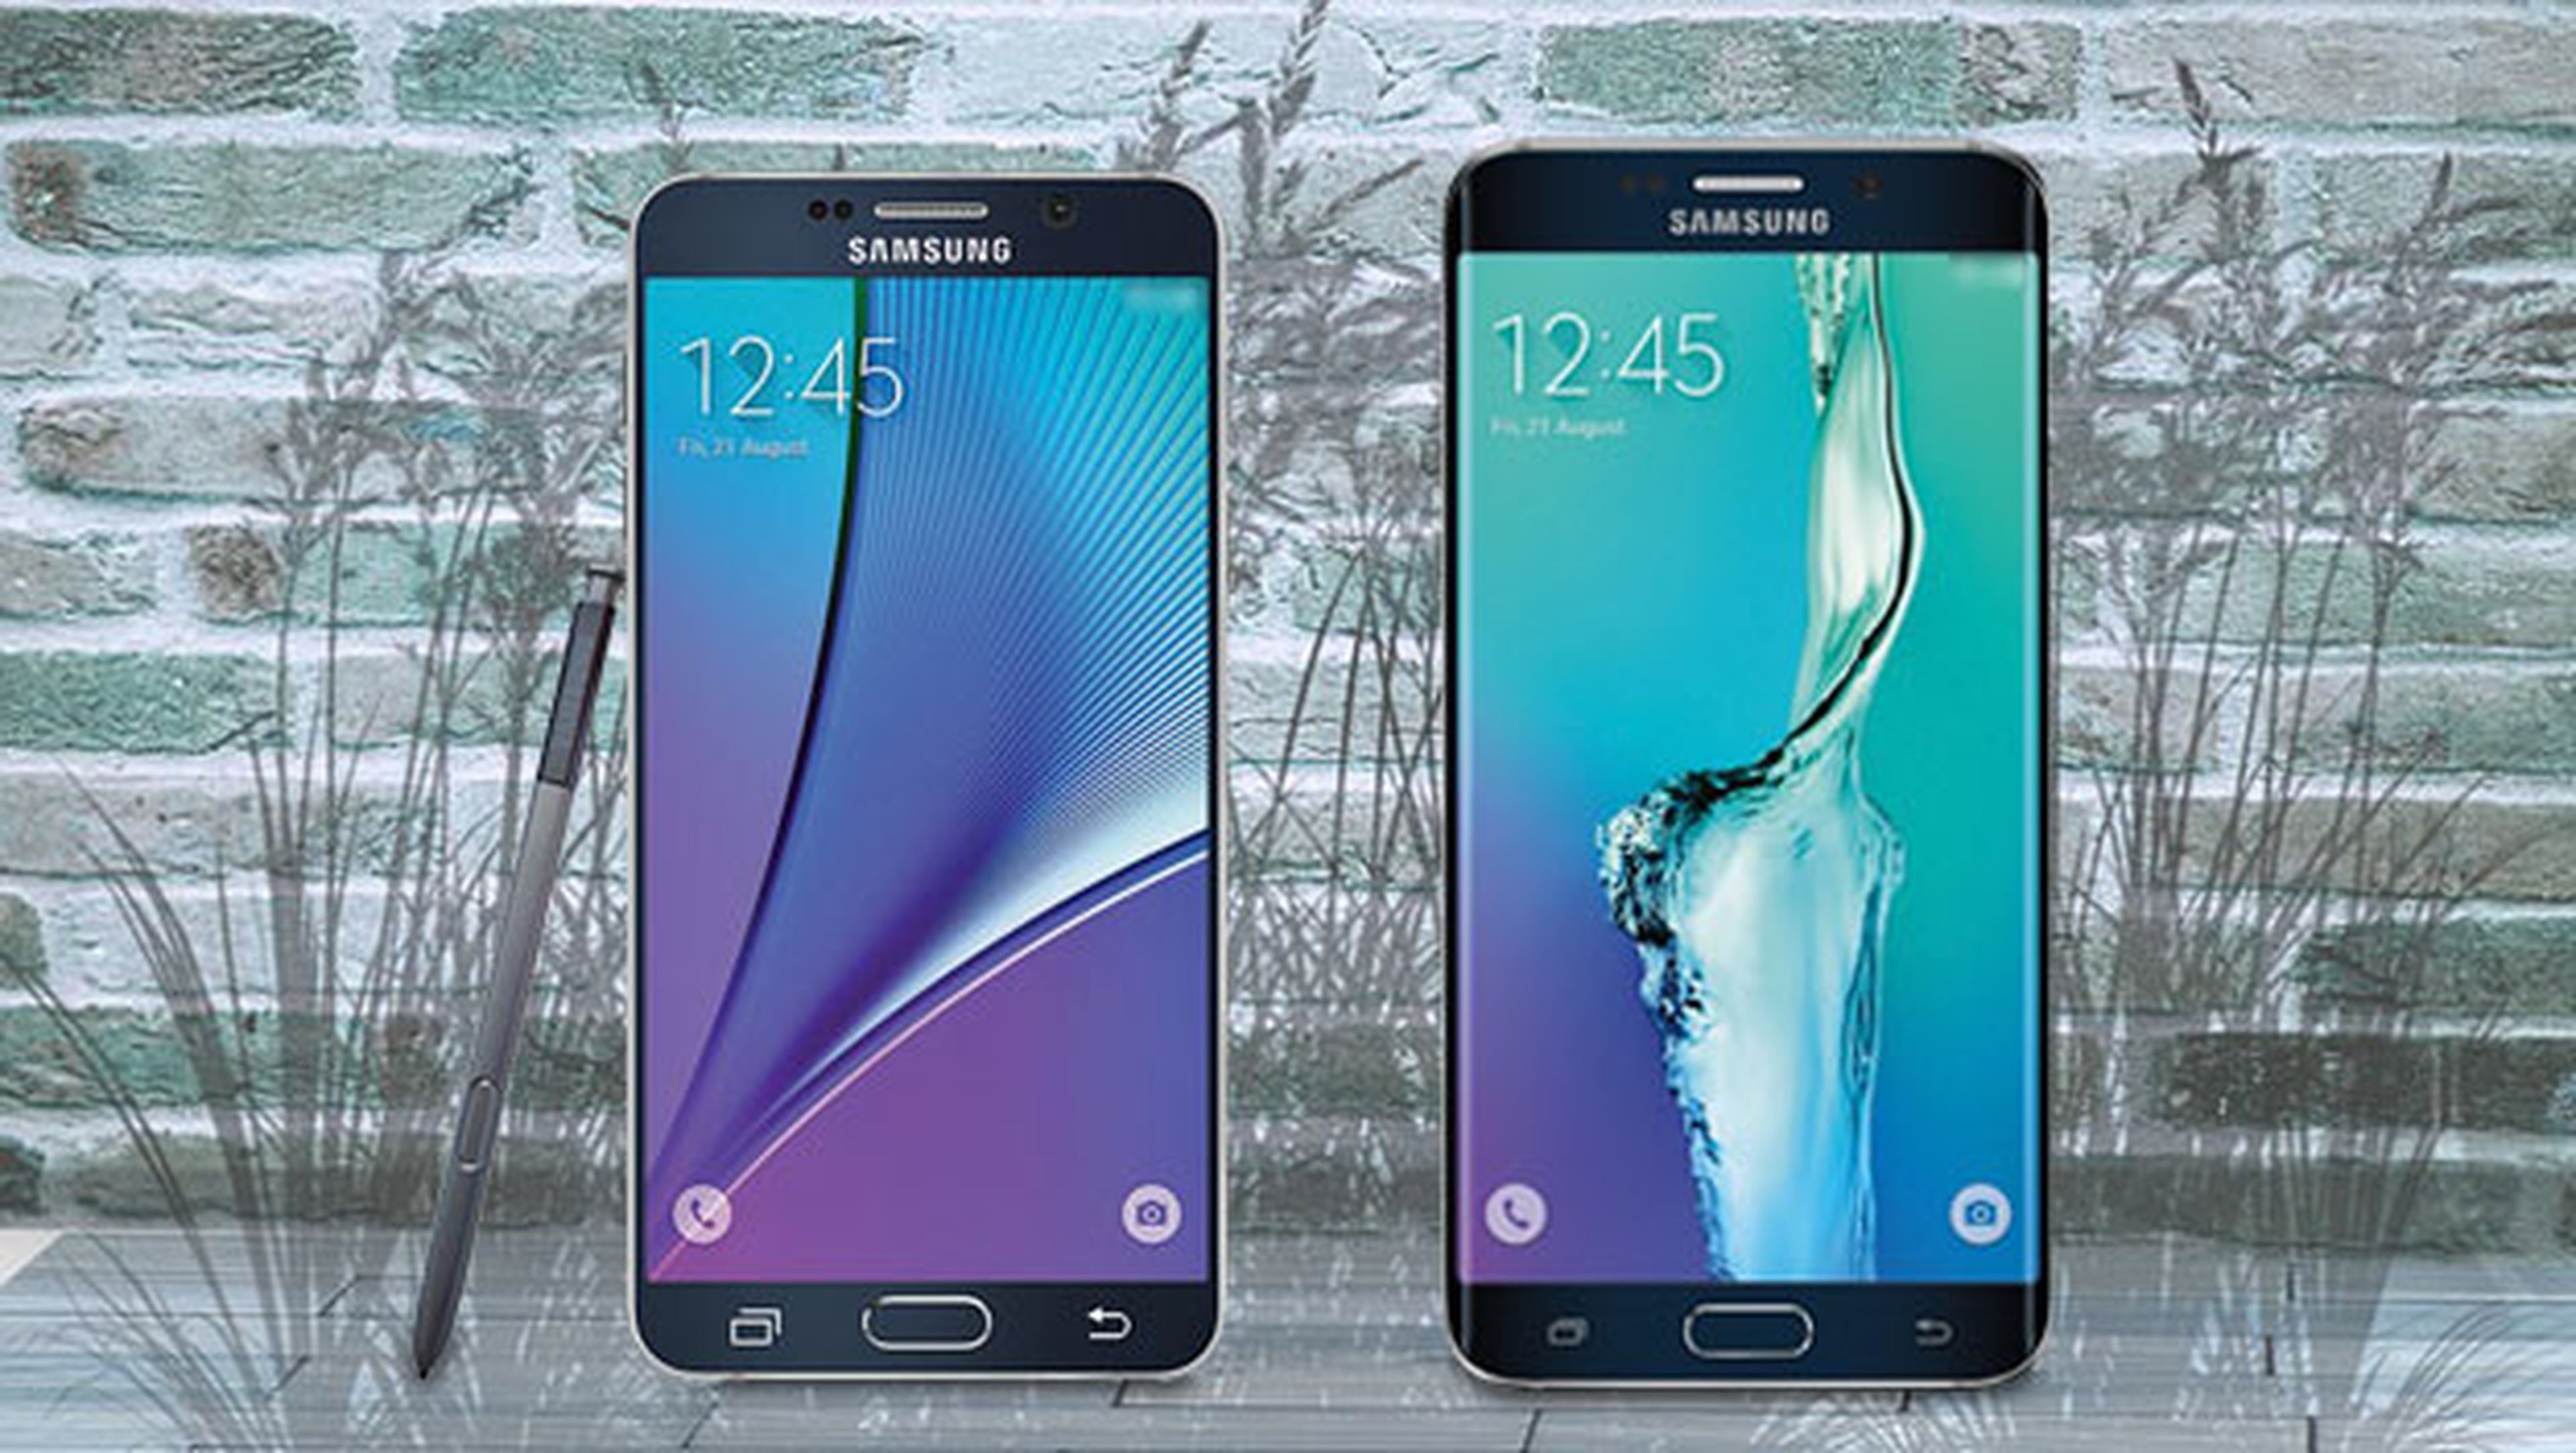 prosperidad es suficiente Deslumbrante Samsung Galaxy Note 5 y Galaxy S6 Edge+ presentados oficialmente | Computer  Hoy